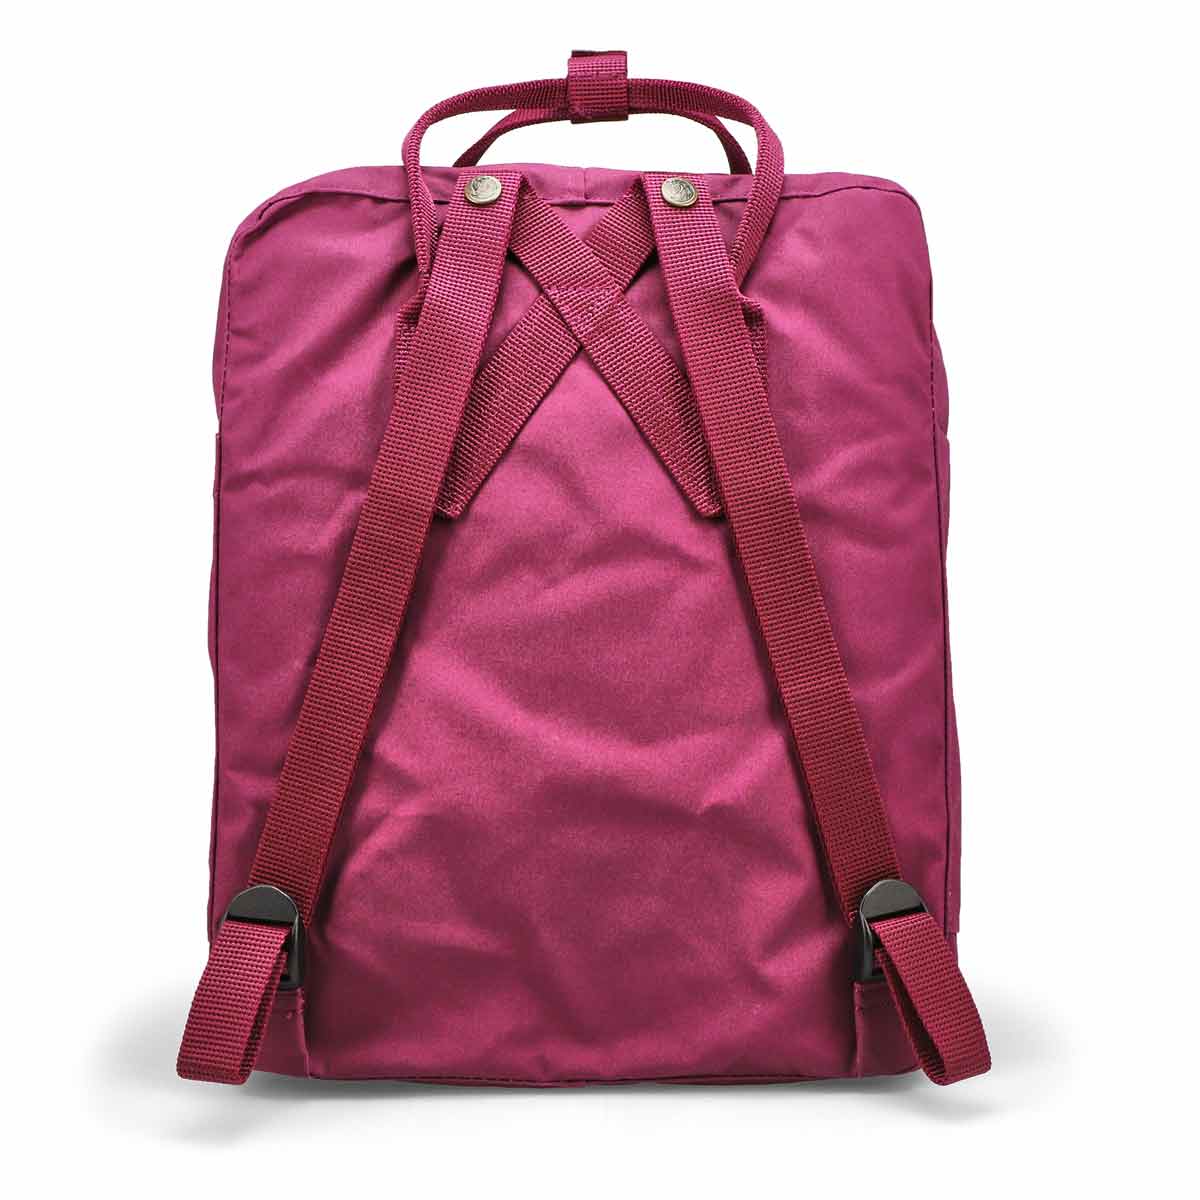 Fjallraven Kanken Backpack - Royal Purple